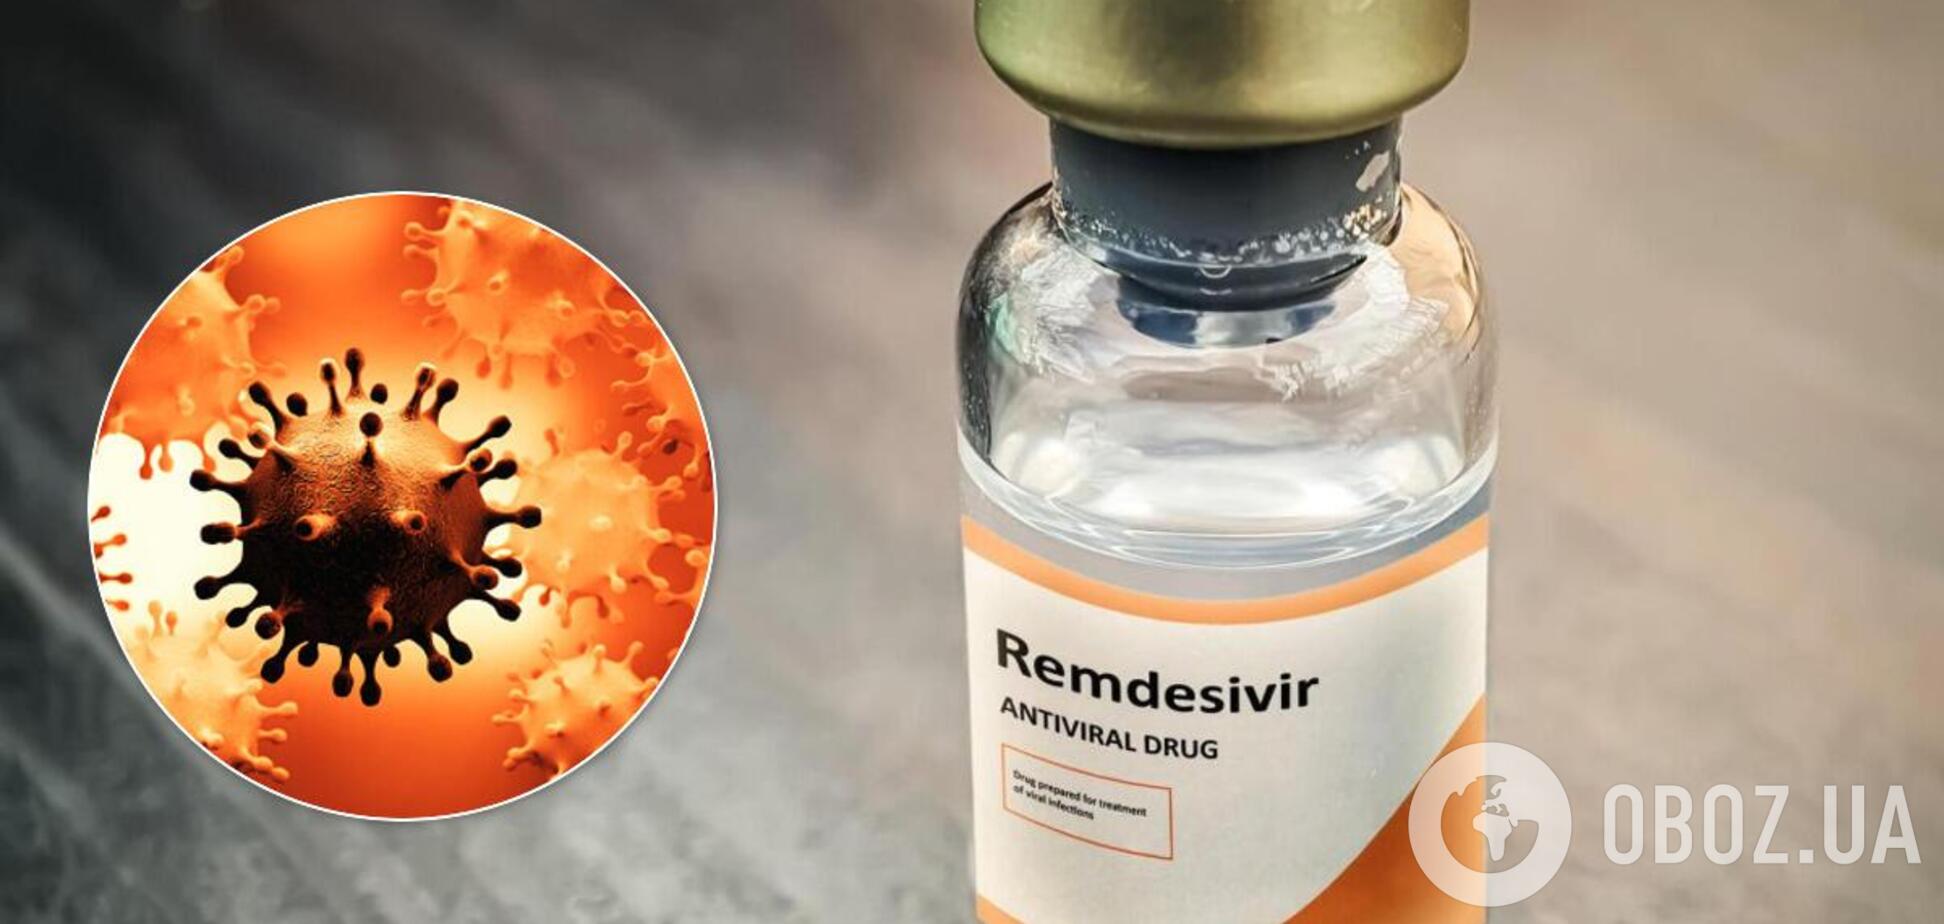 Україна закупить Ремдесивир для лікування коронавірусу